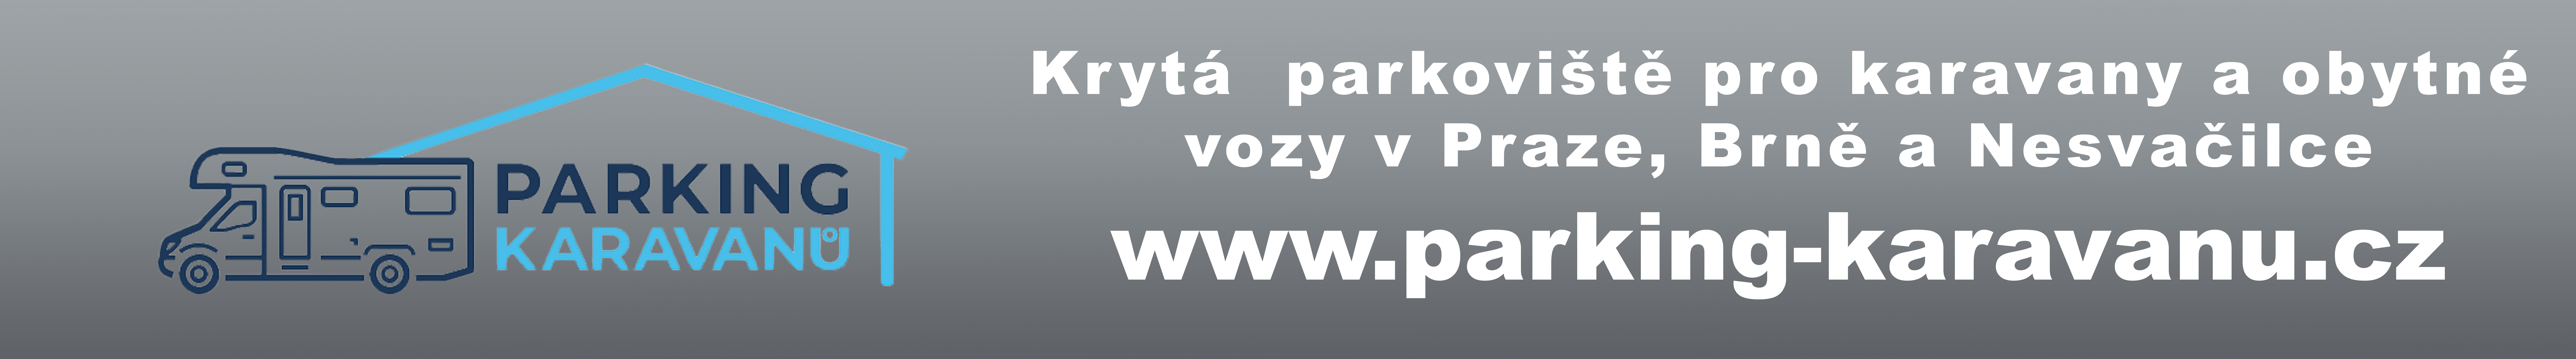 Parking_karavanů